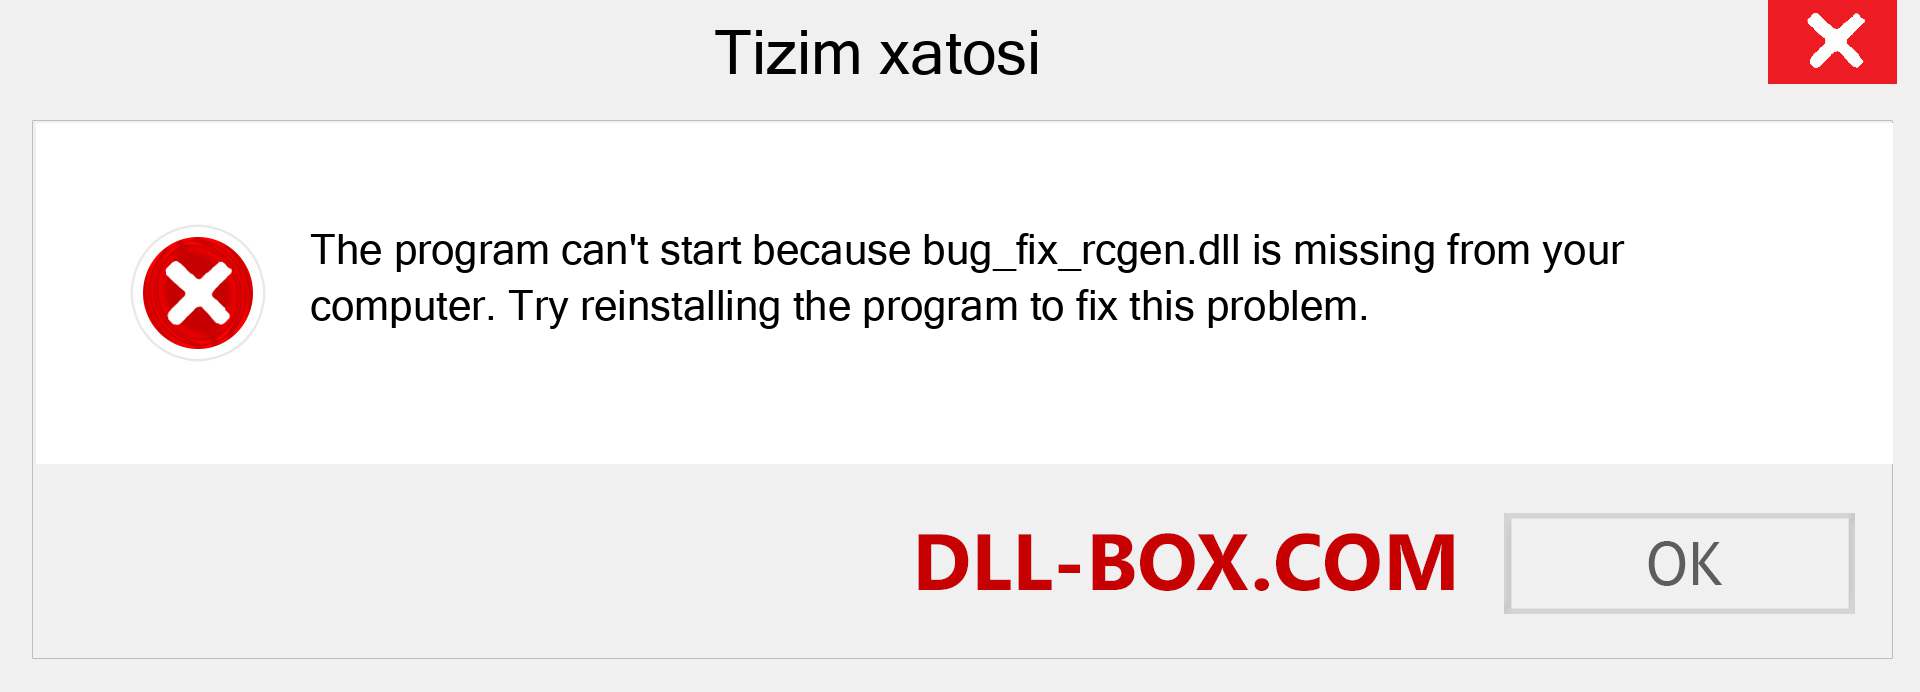 bug_fix_rcgen.dll fayli yo'qolganmi?. Windows 7, 8, 10 uchun yuklab olish - Windowsda bug_fix_rcgen dll etishmayotgan xatoni tuzating, rasmlar, rasmlar